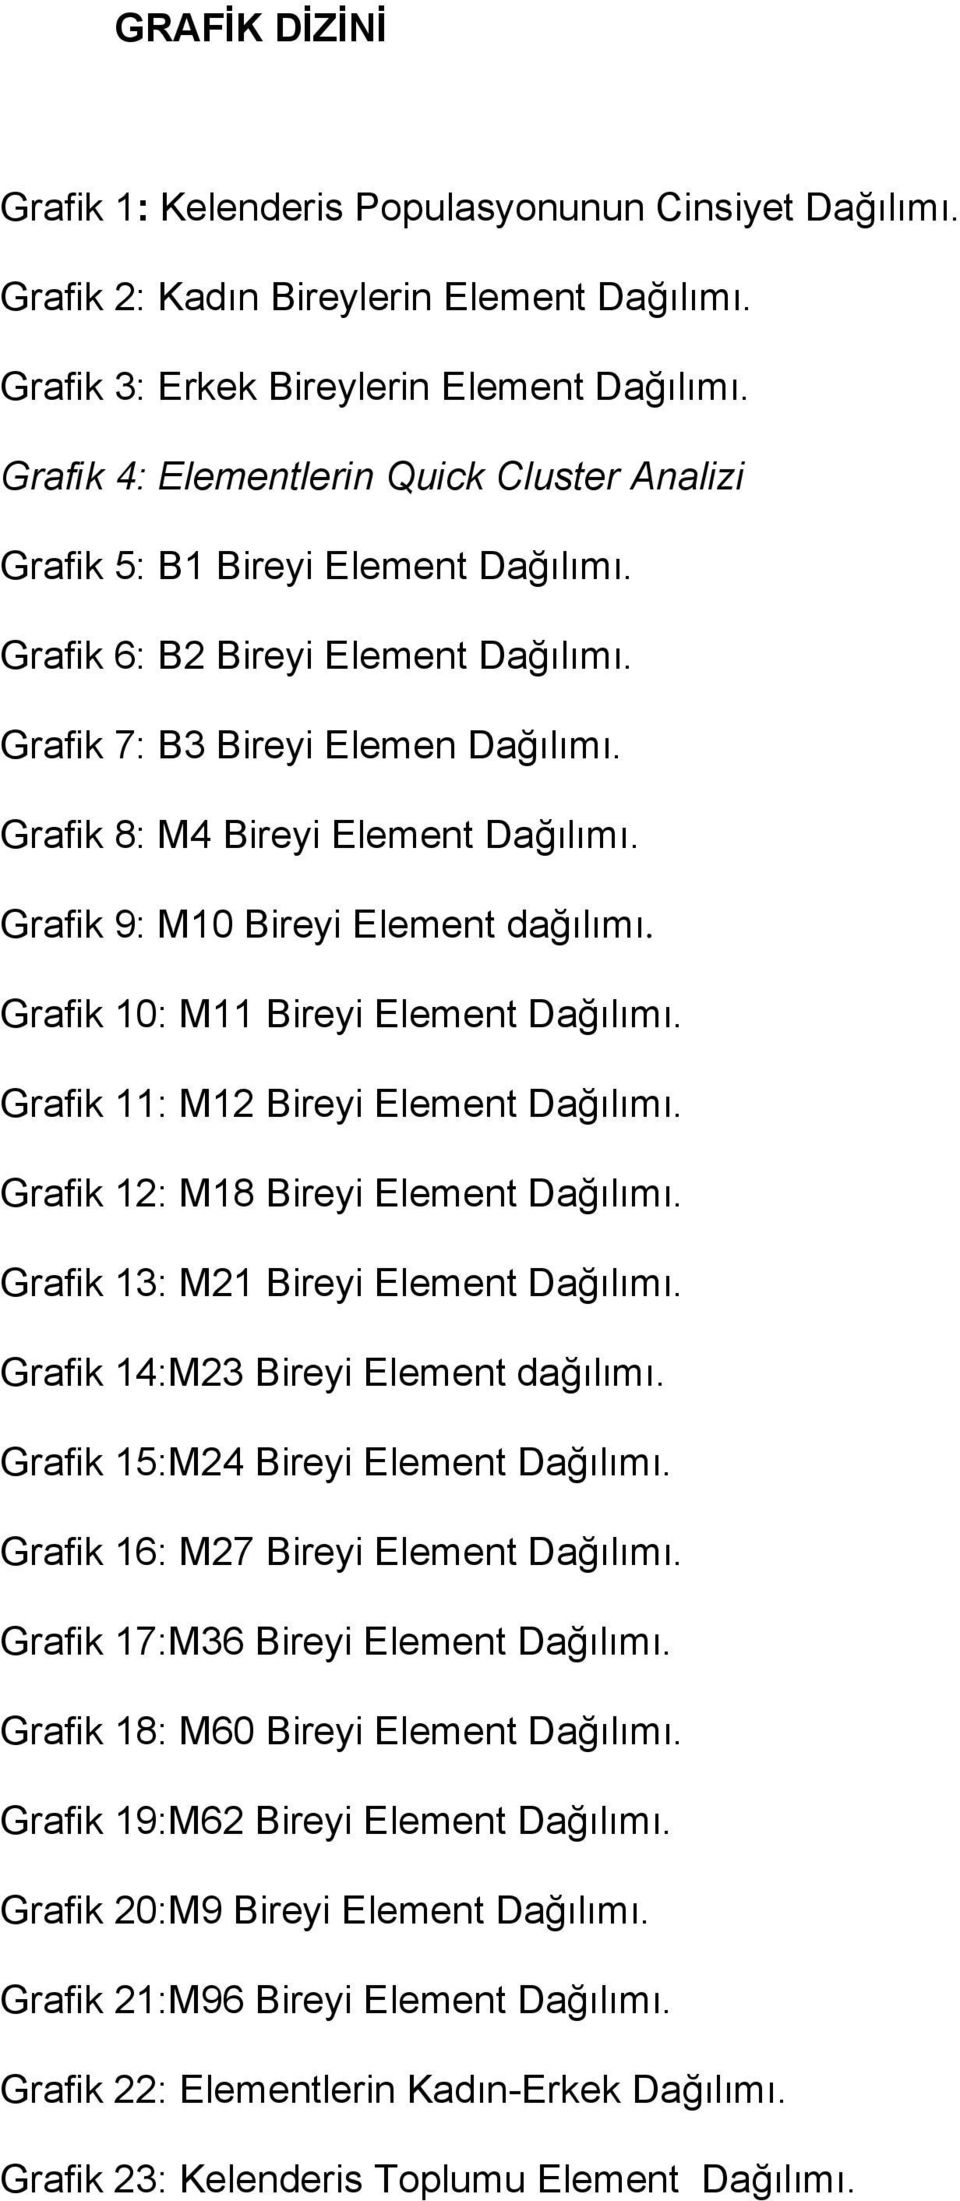 Grafik 9: M10 Bireyi Element dağılımı. Grafik 10: M11 Bireyi Element Dağılımı. Grafik 11: M12 Bireyi Element Dağılımı. Grafik 12: M18 Bireyi Element Dağılımı. Grafik 13: M21 Bireyi Element Dağılımı.